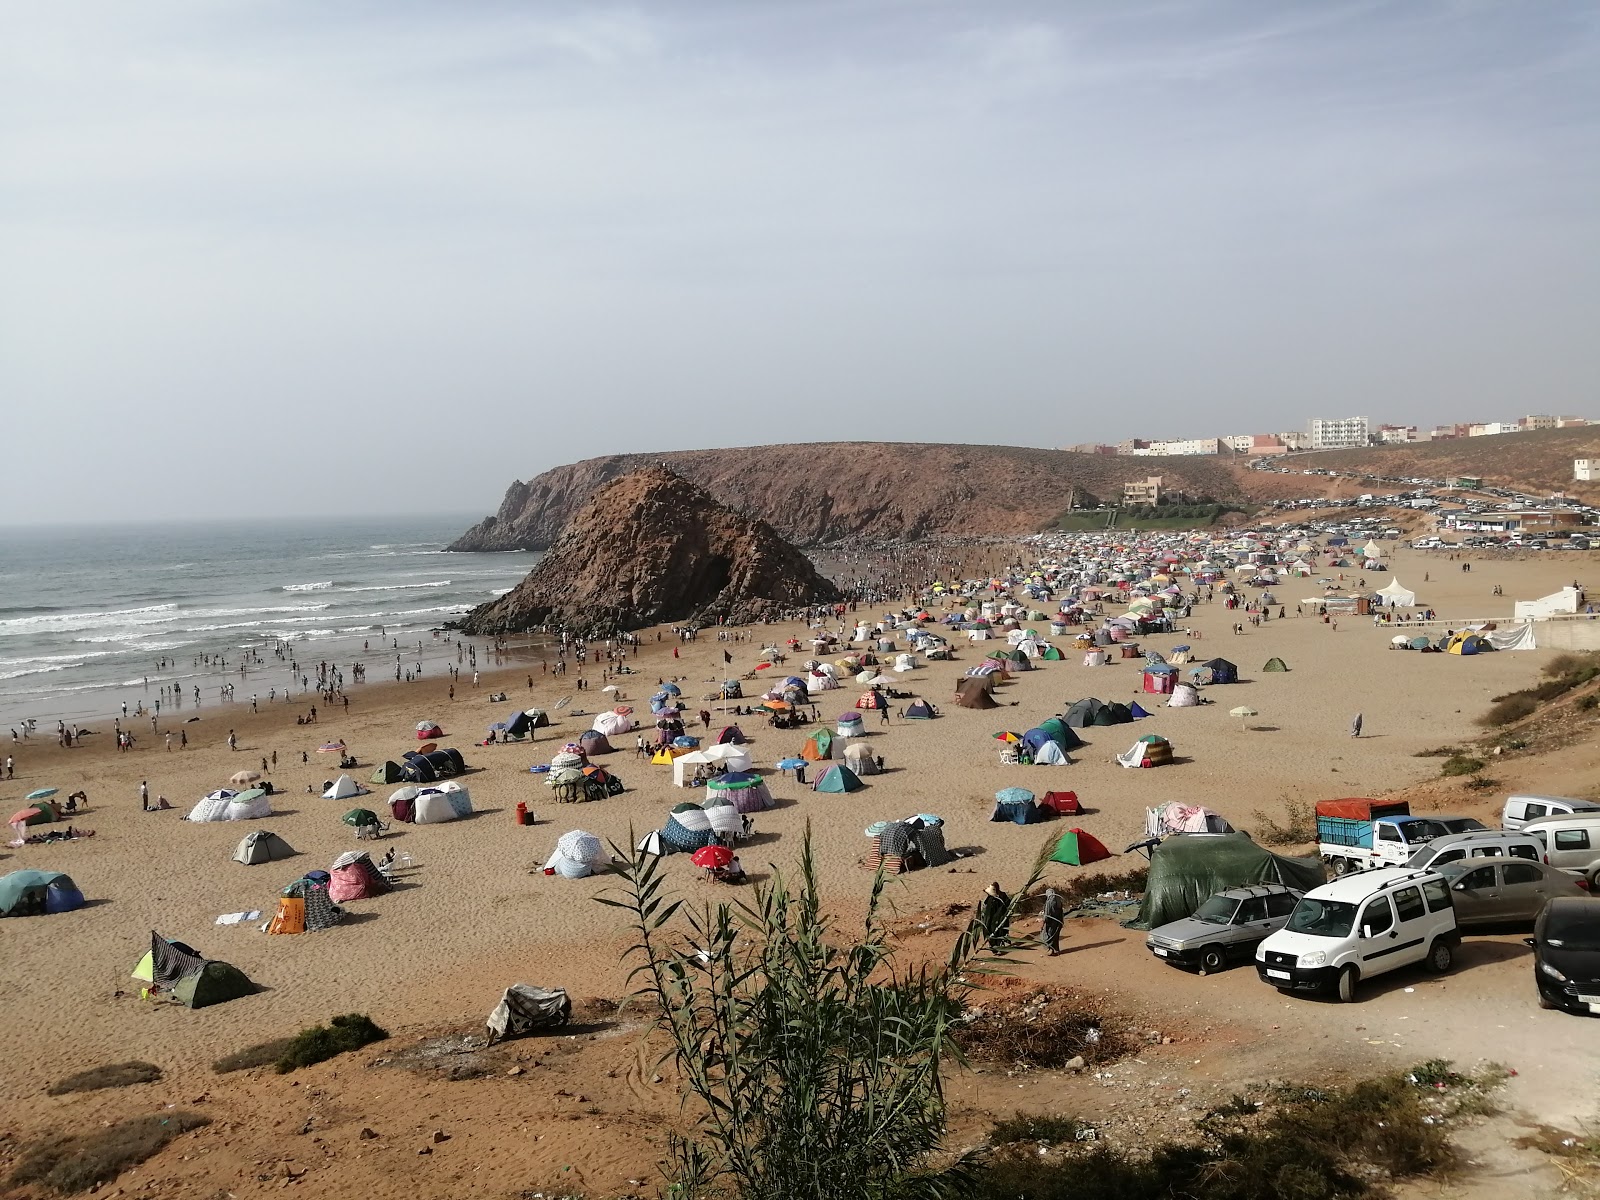 Plage Sidi Mohammed Ben Abdellah'in fotoğrafı - rahatlamayı sevenler arasında popüler bir yer